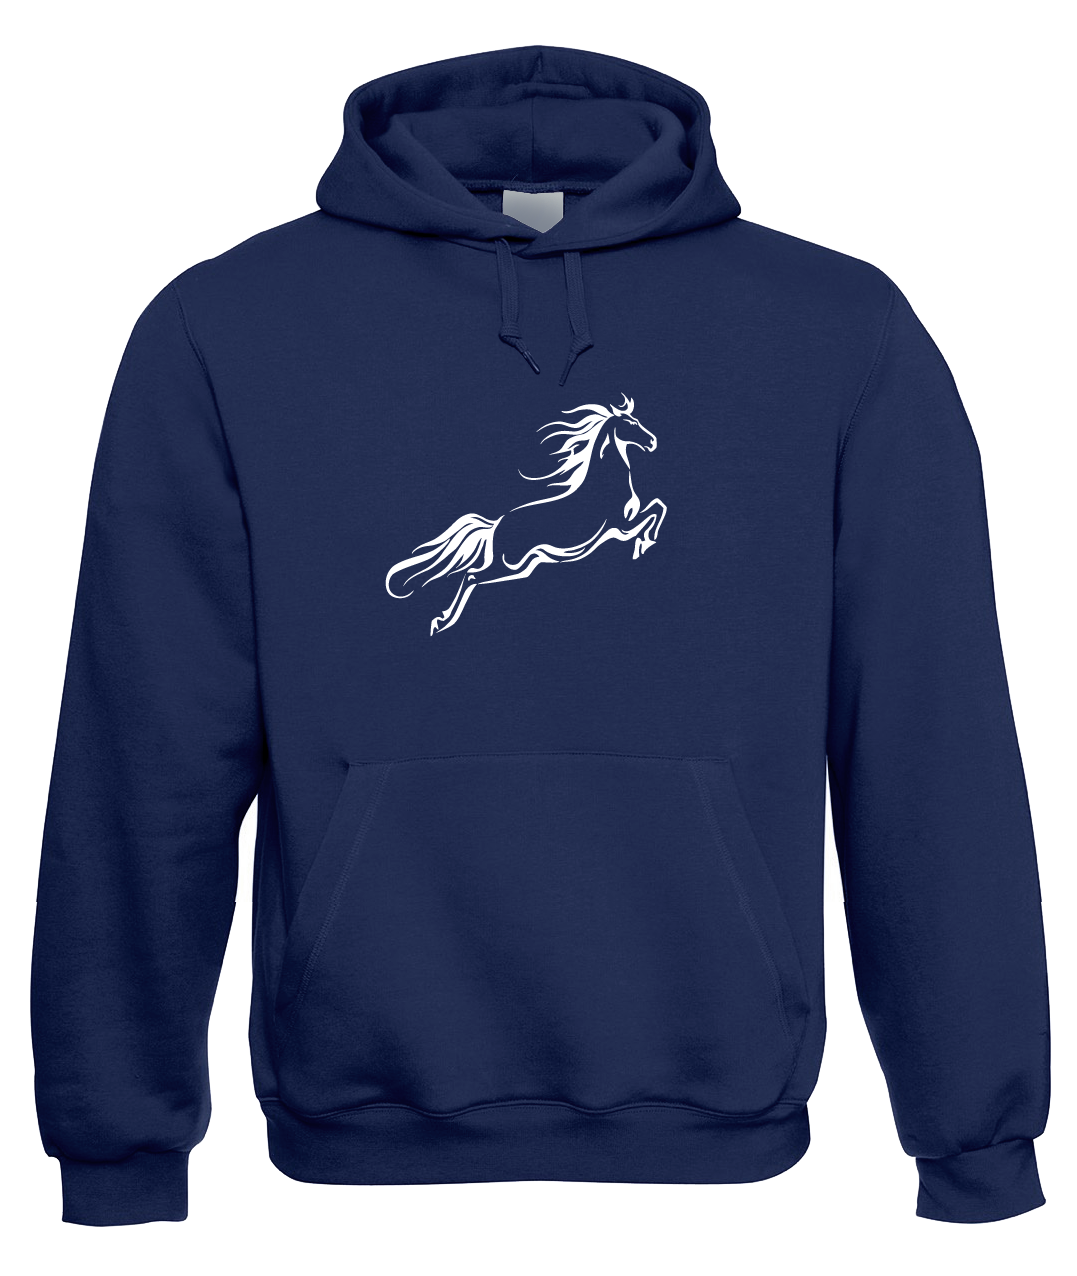 Mikina s koněm - Kůň ve skoku Velikost: XL, Barva: Tmavě modrá